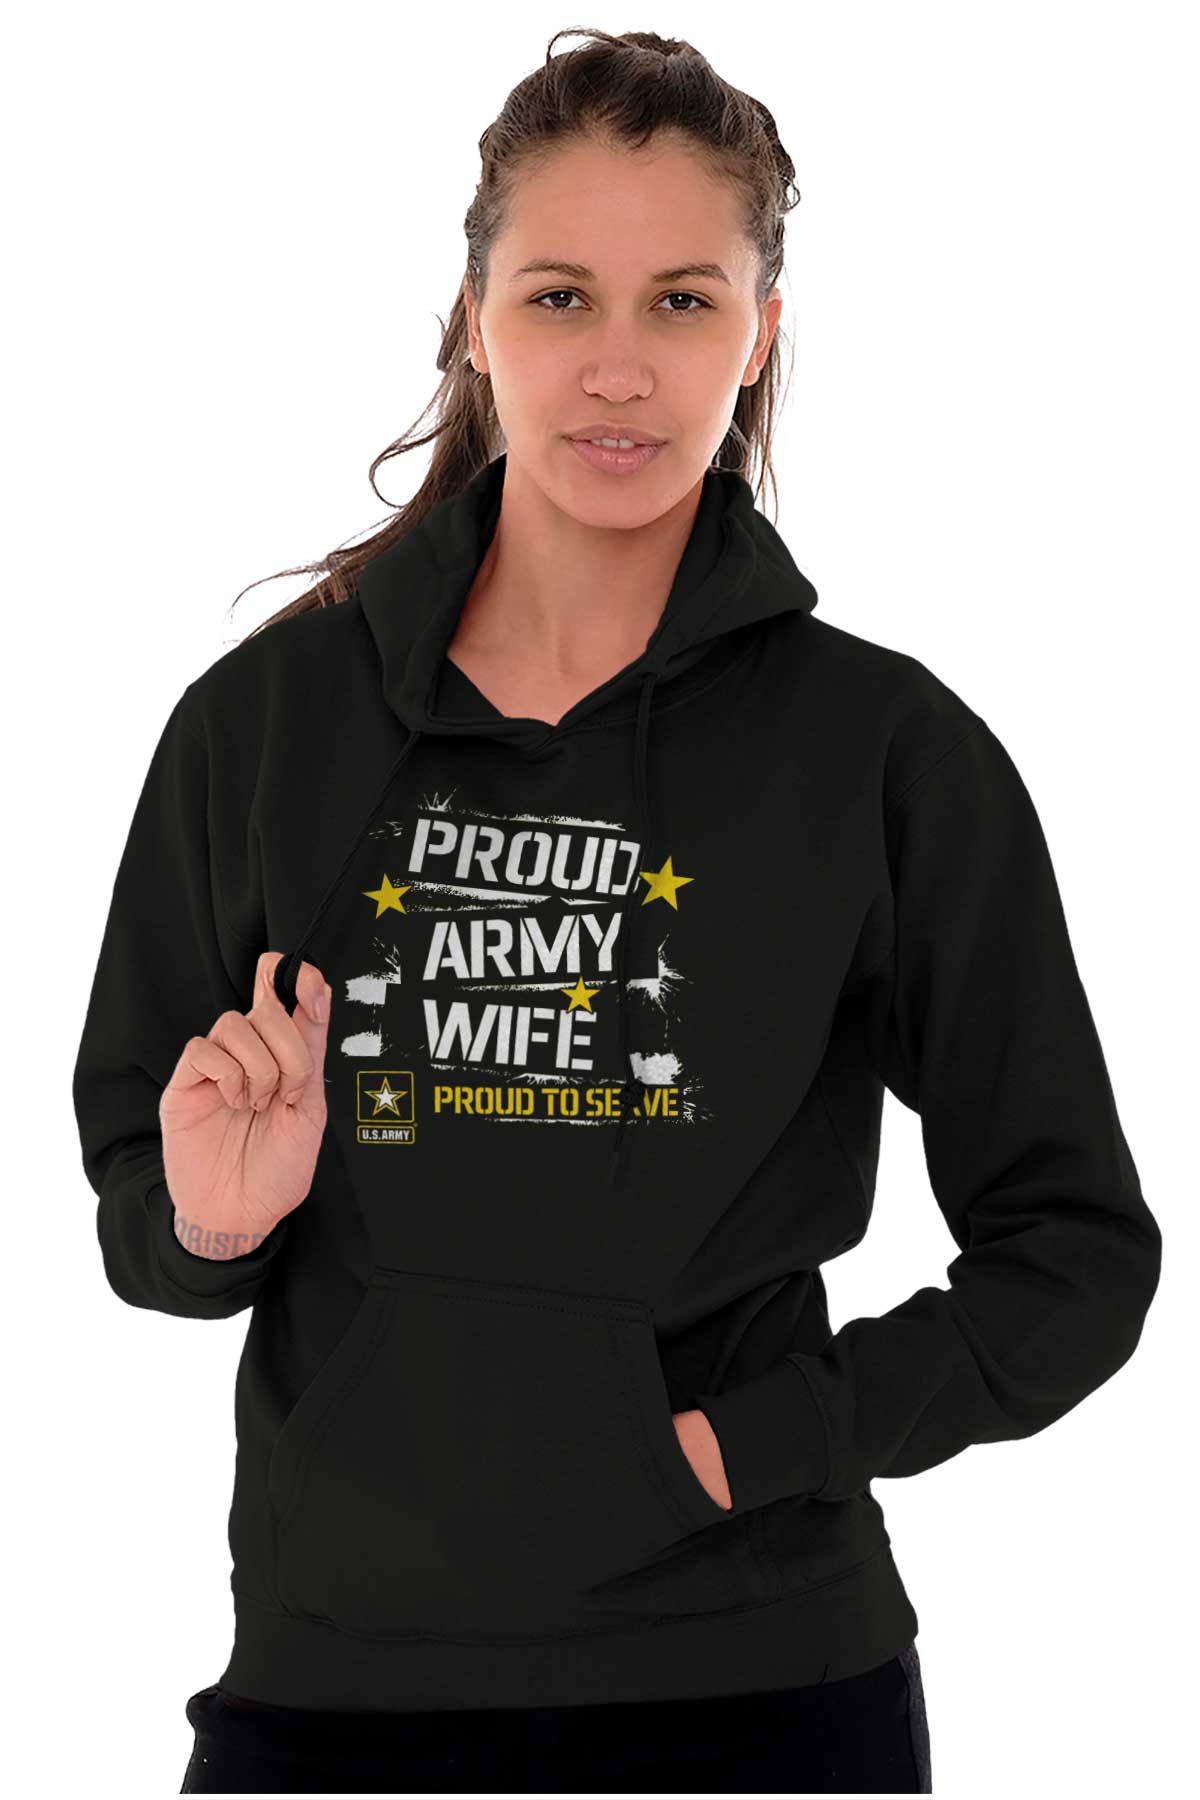 Proud Army Wife Proud To Serve Us Military Women Long Sleeve Hoodie Sweatshirt Ebay 